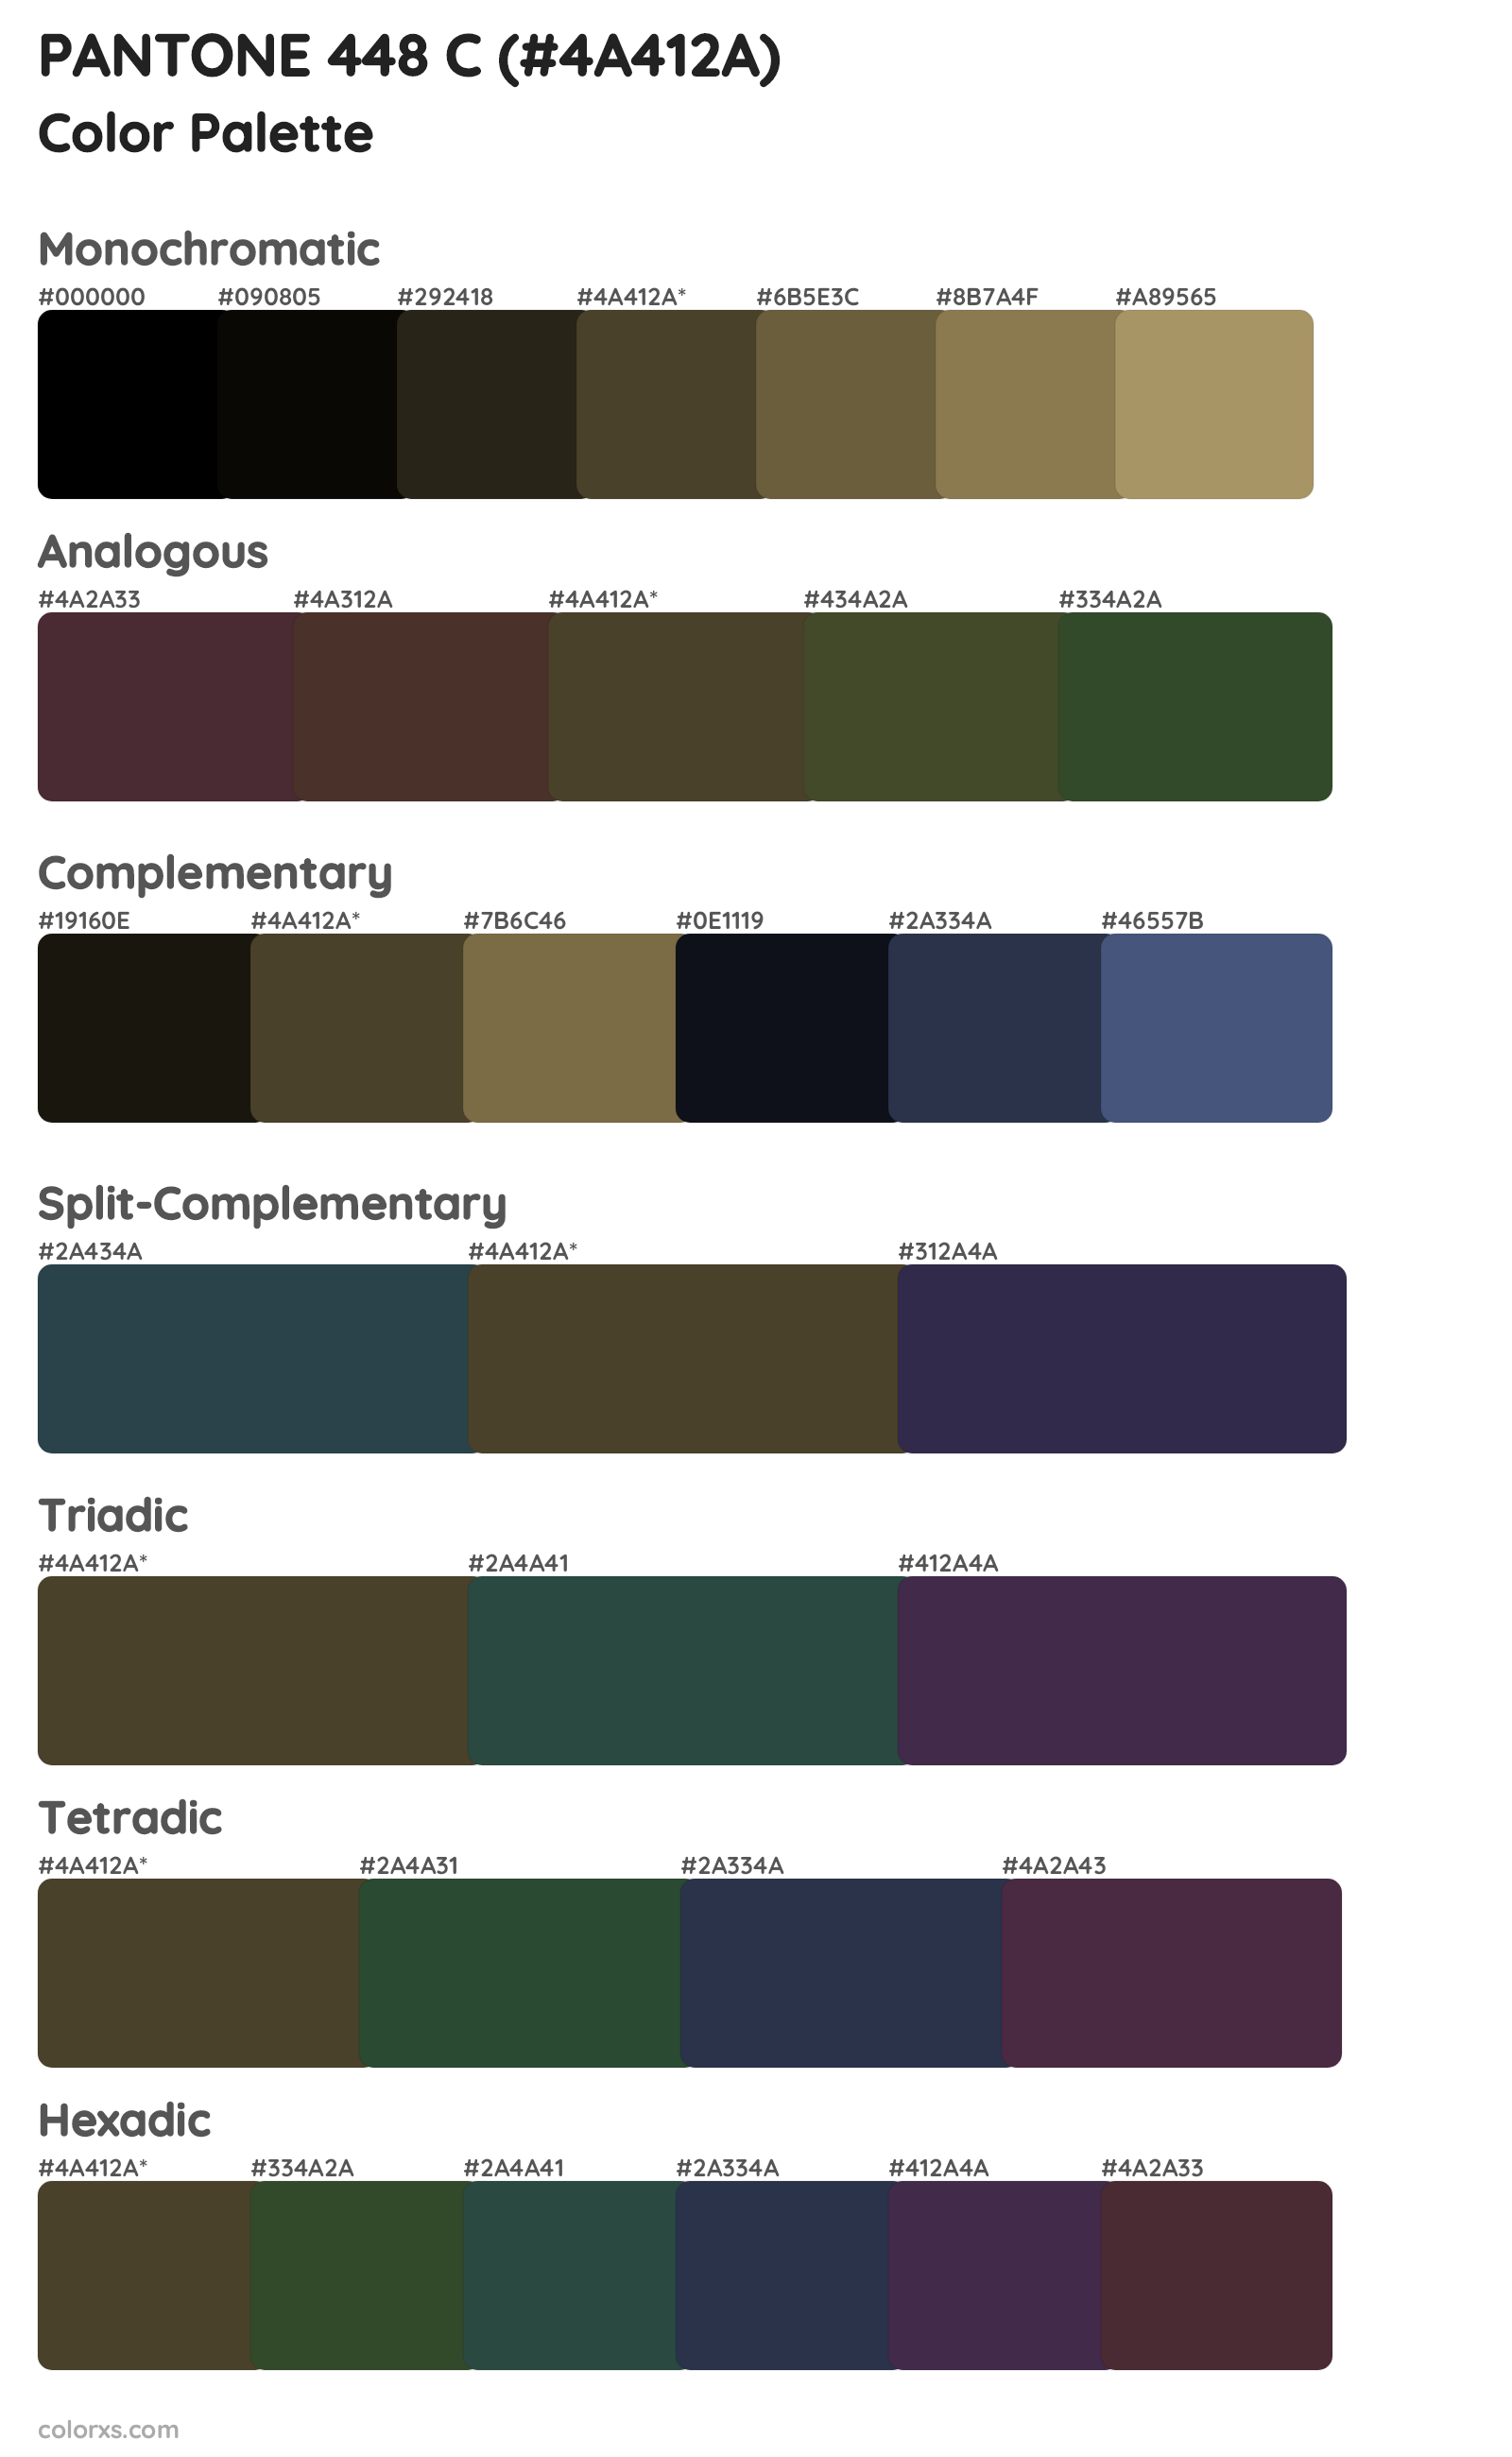 PANTONE 448 C Color Scheme Palettes